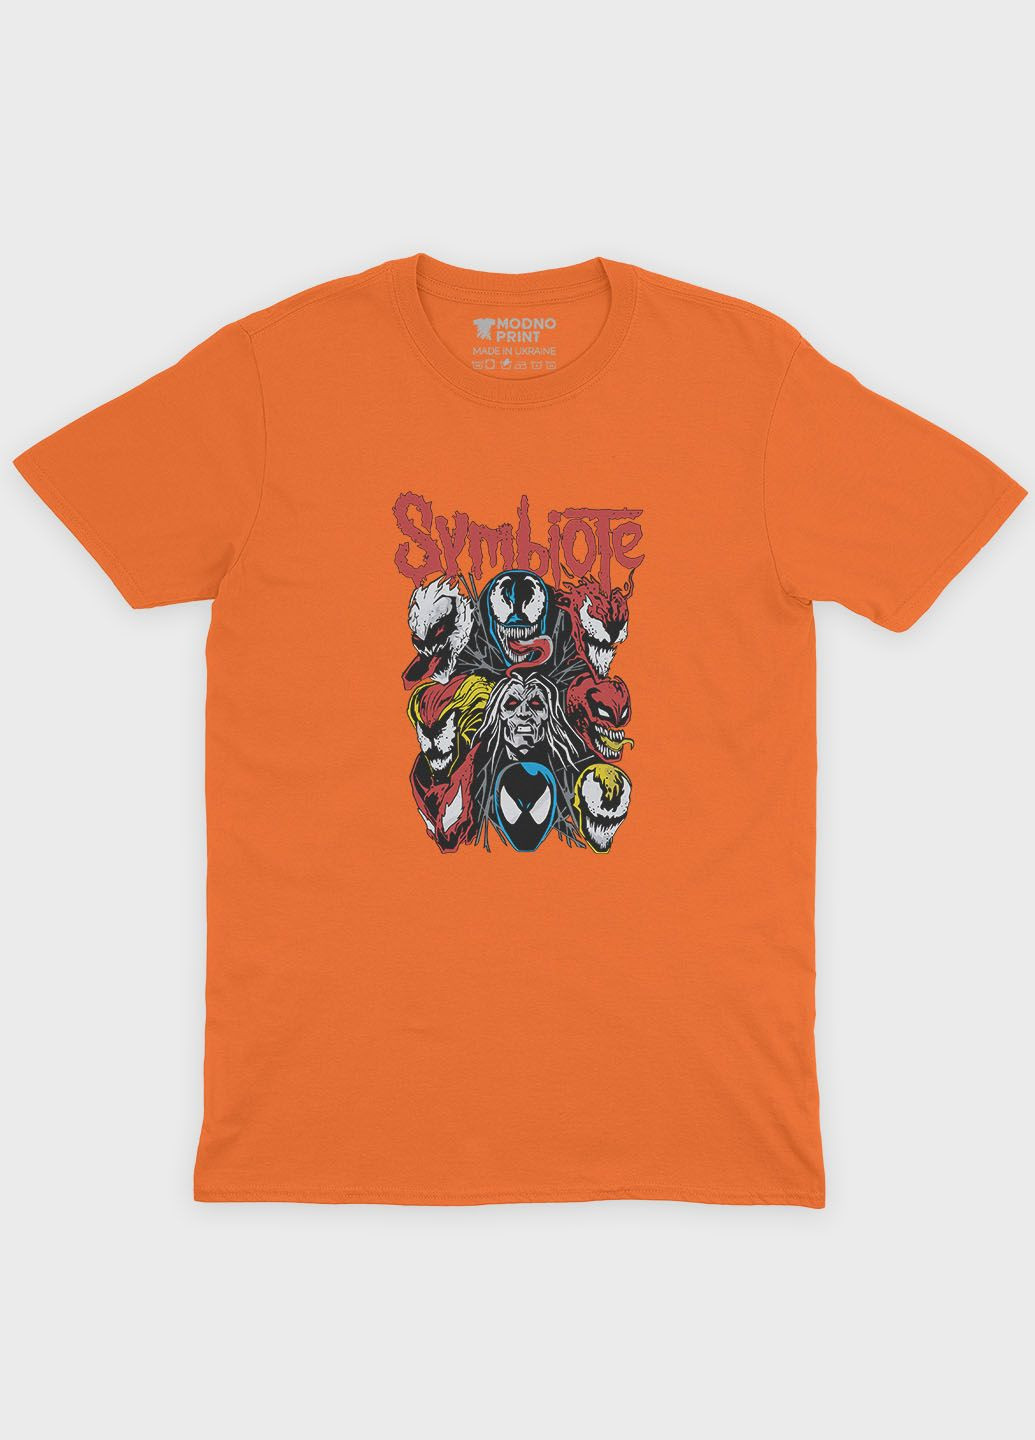 Помаранчева демісезонна футболка для хлопчика з принтом суперзлодія - веном (ts001-1-ora-006-013-025-b) Modno